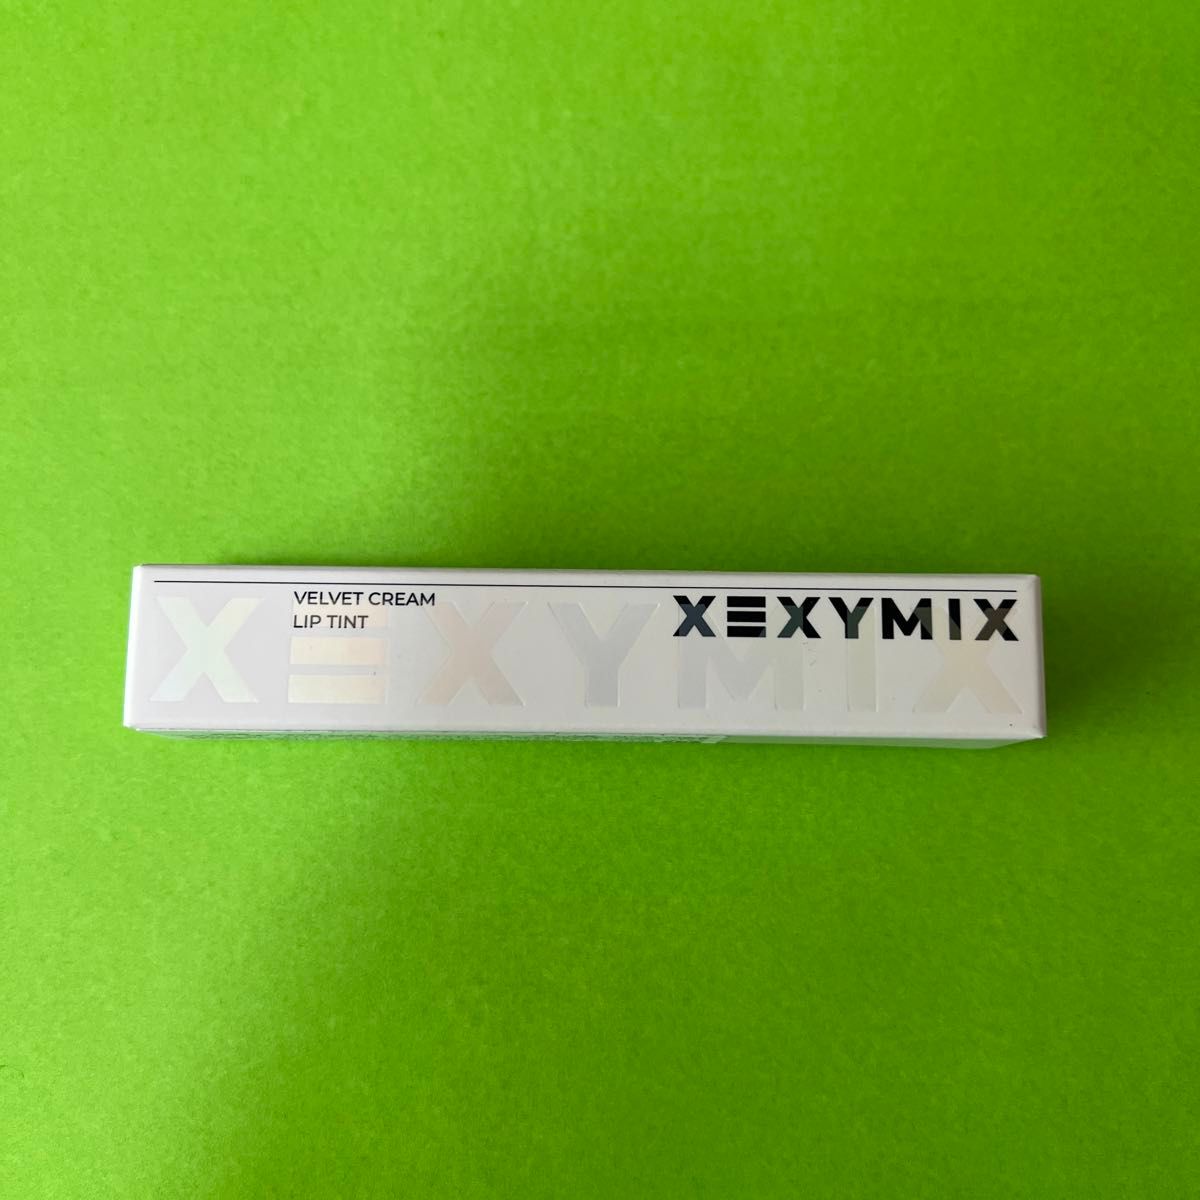 XEXYMIX ベルベットクリームリップティントVelvet Cream Lip Tint 落ちにくいマットリップカラー韓国コスメ